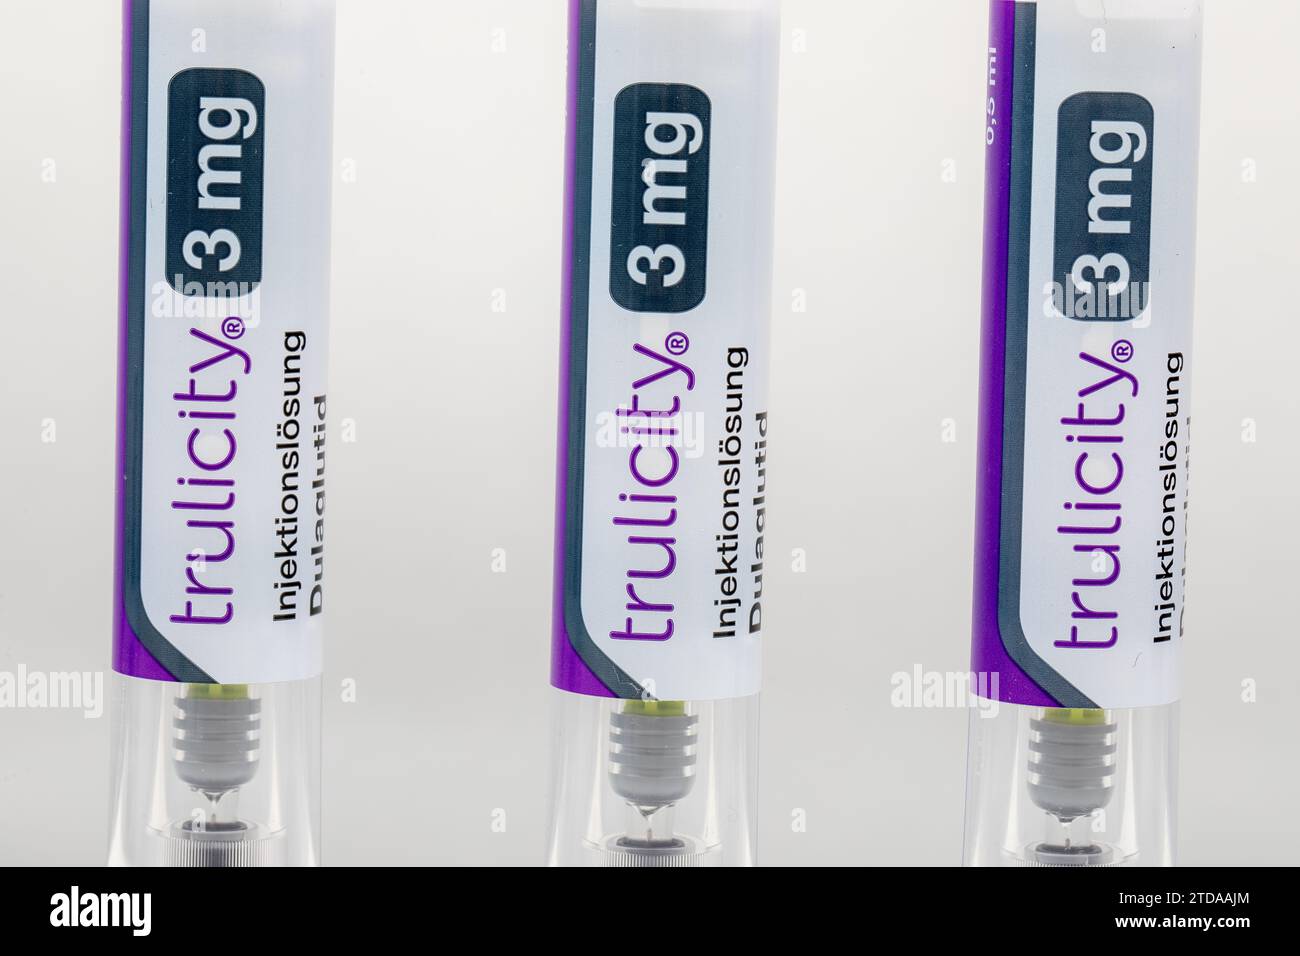 Drei Trulicity Injektions-Stifte - Diabetes-Medikamente und medizinische Versorgung - Lifestyle-Medikament Stockfoto